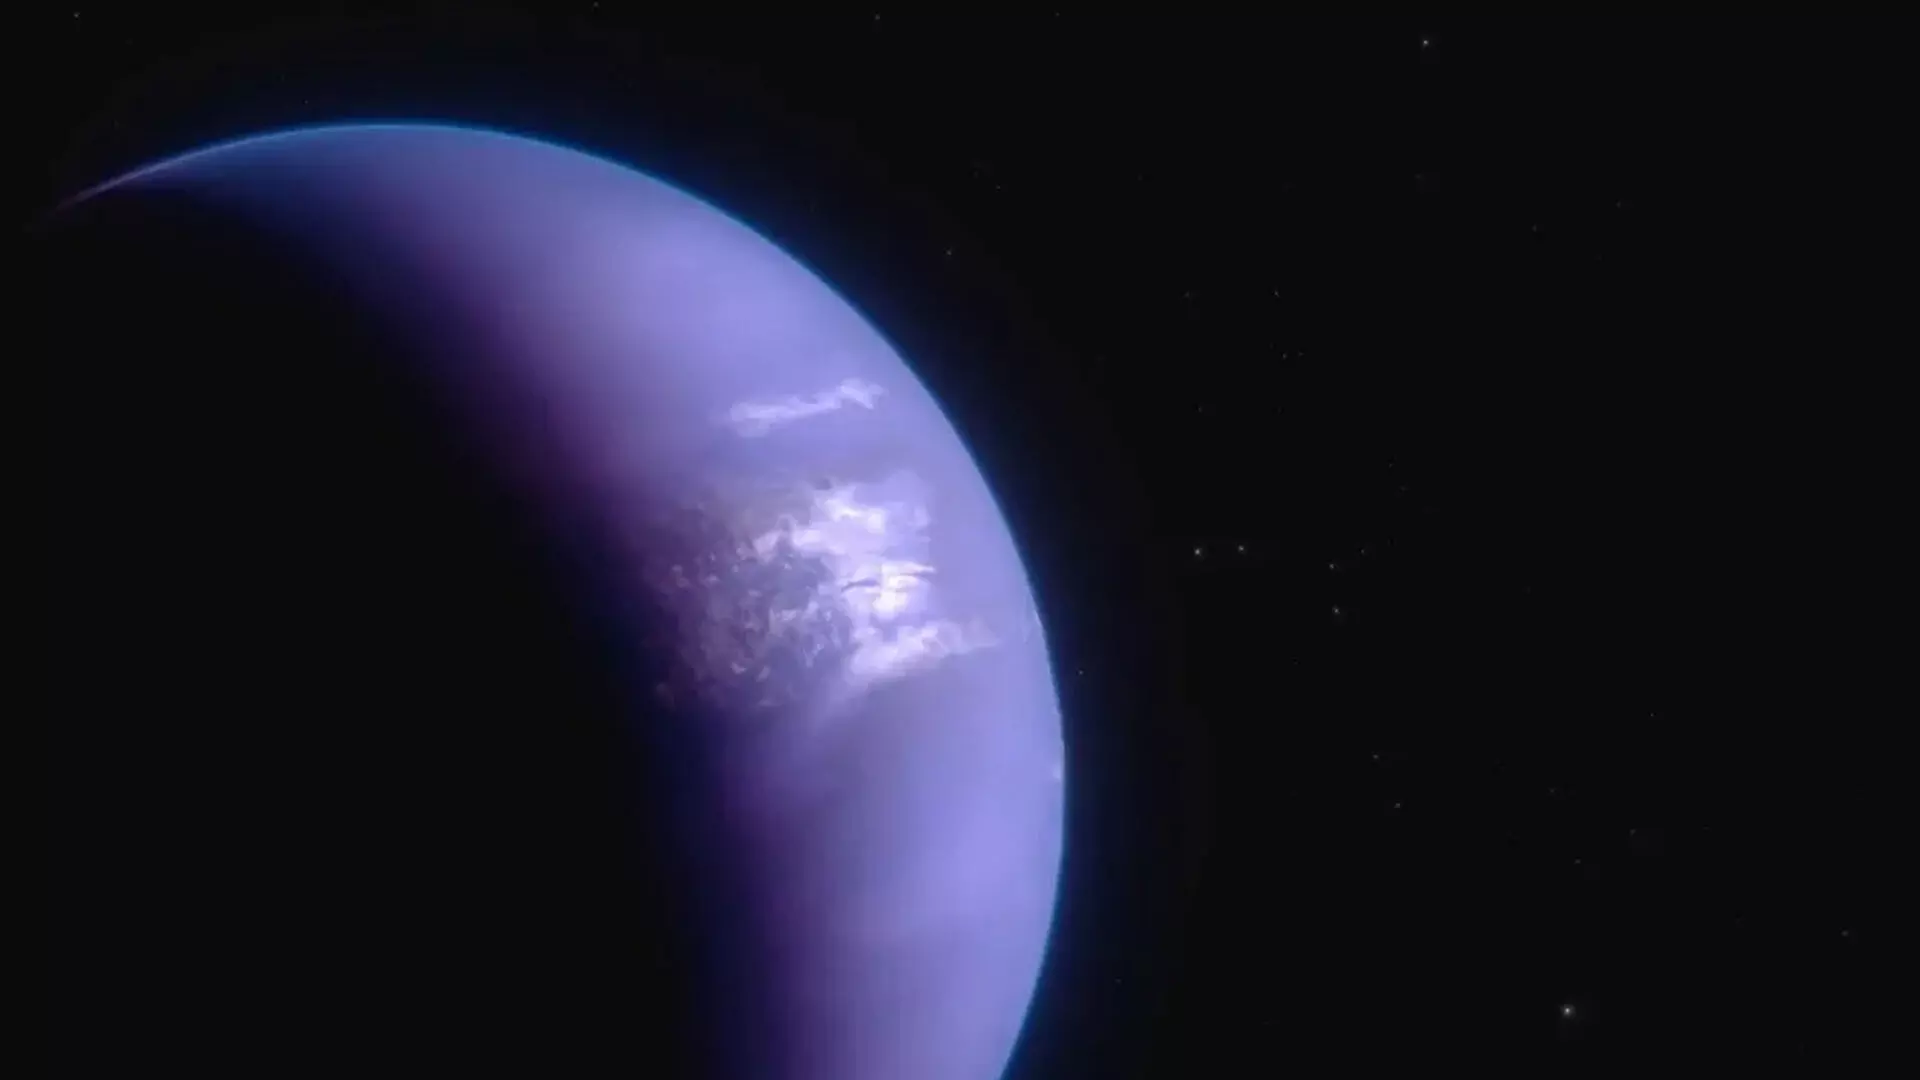 जेम्स वेब टेलीस्कोप ने अनन्त रात वाले दो-मुखी ग्रह पर गोली से भी तेज़ हवा बहती देखी